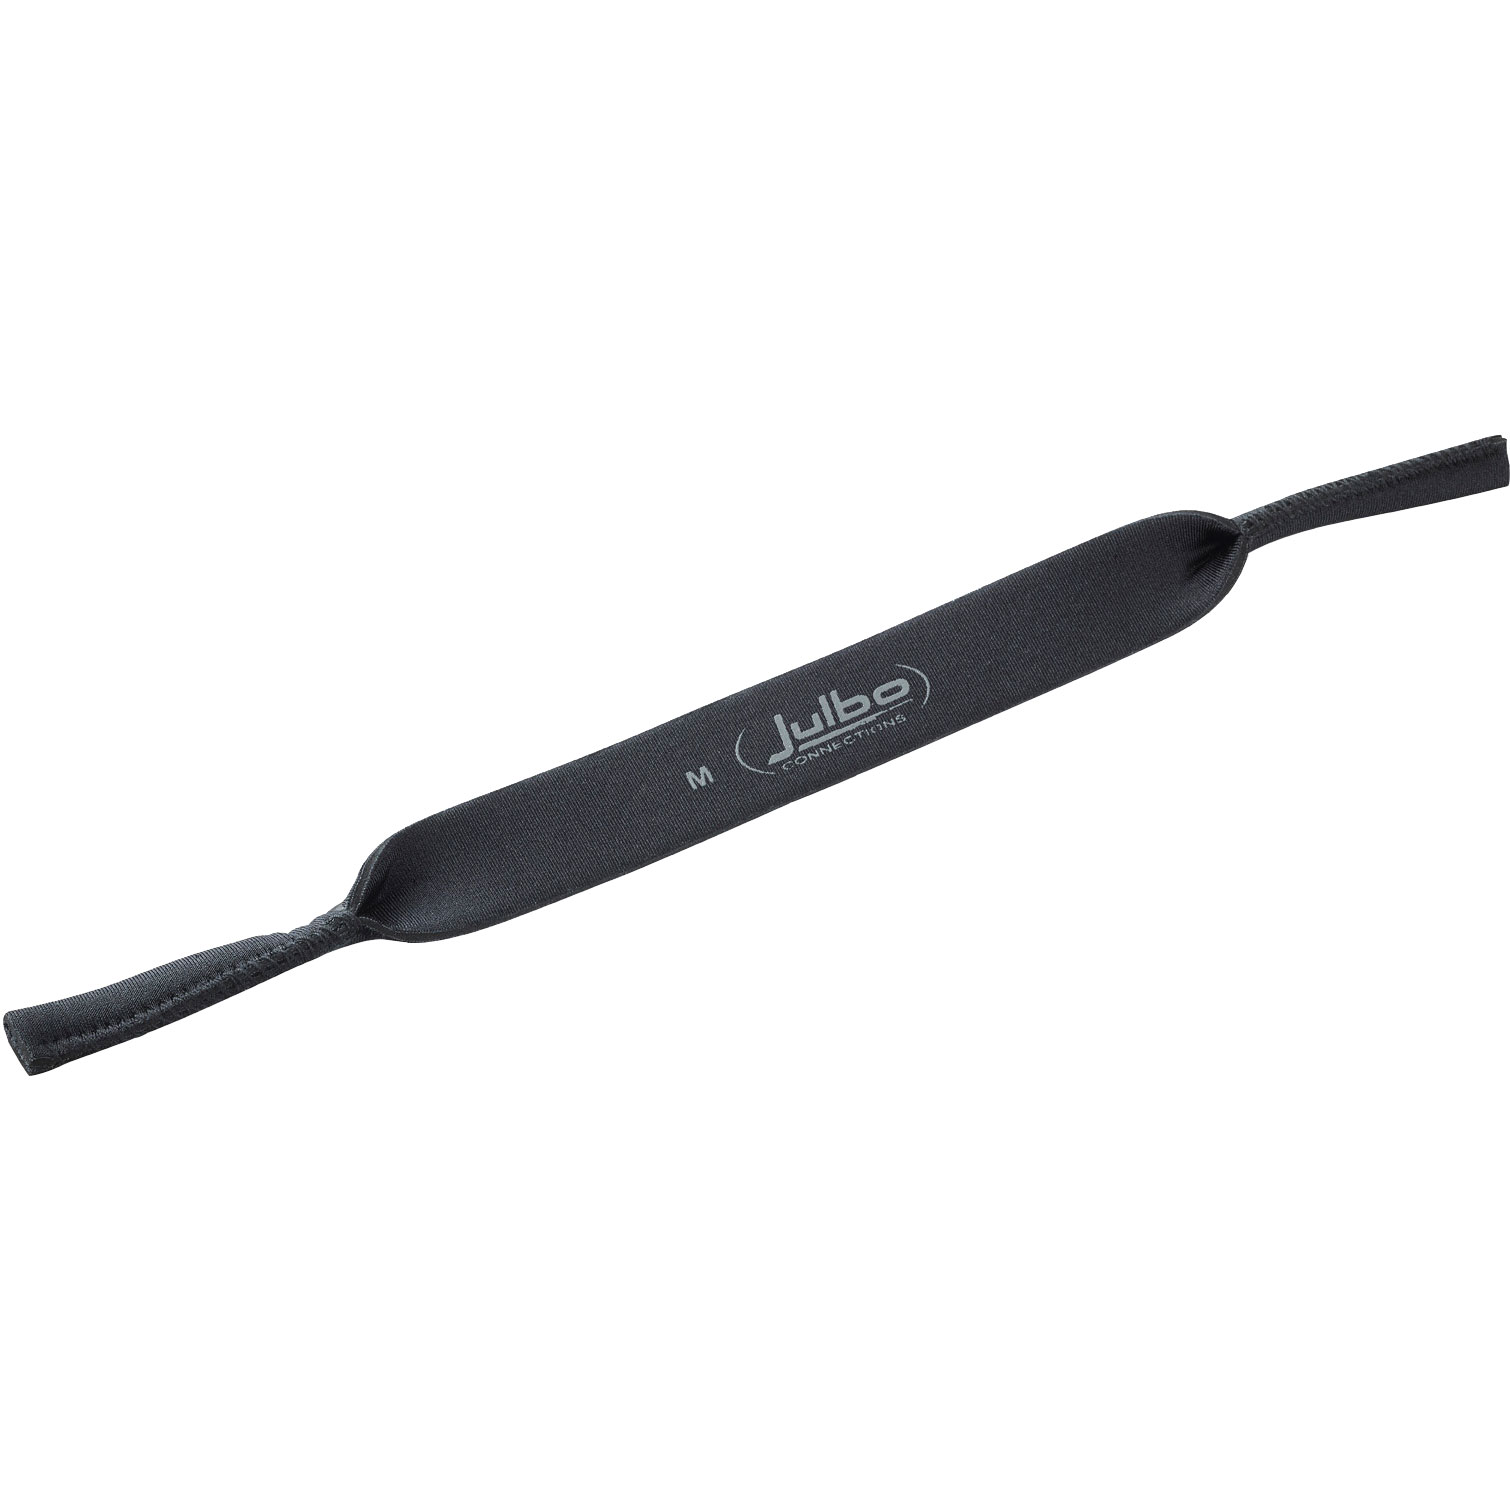 Produktbild von Julbo Neopren Brillenband - M - schwarz